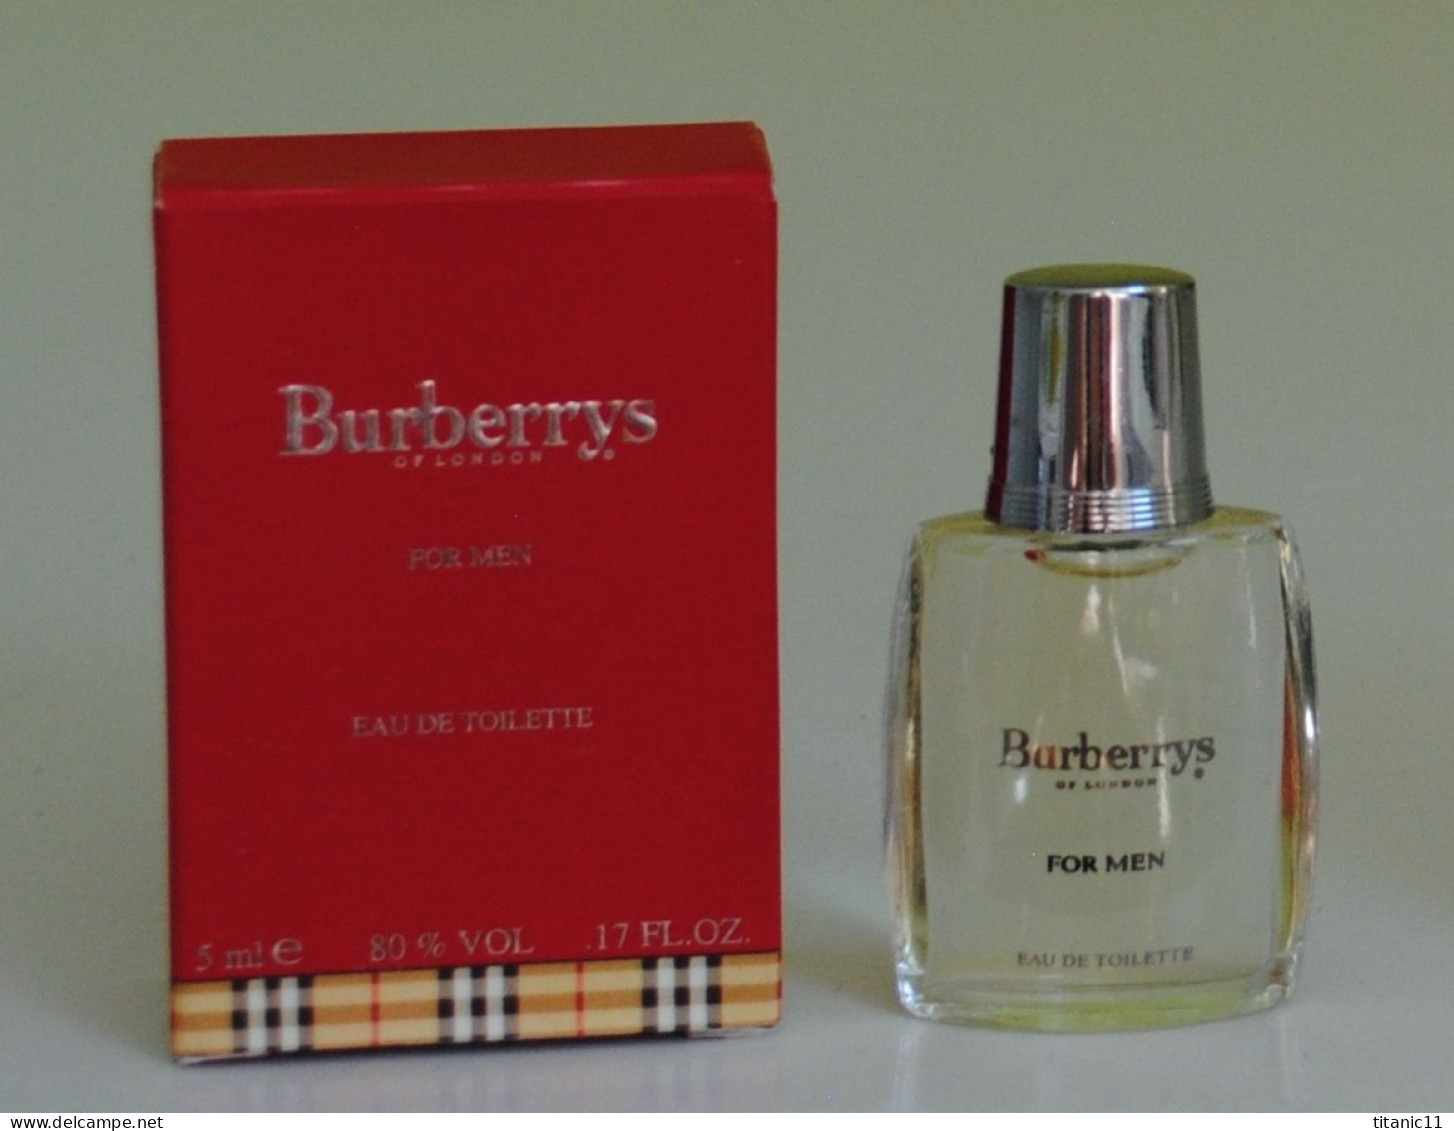 Miniature BURBERRY'S OF LONDON FOR MEN De Burberrys ( Etats-Unis ) - Mignon Di Profumo Uomo (con Box)